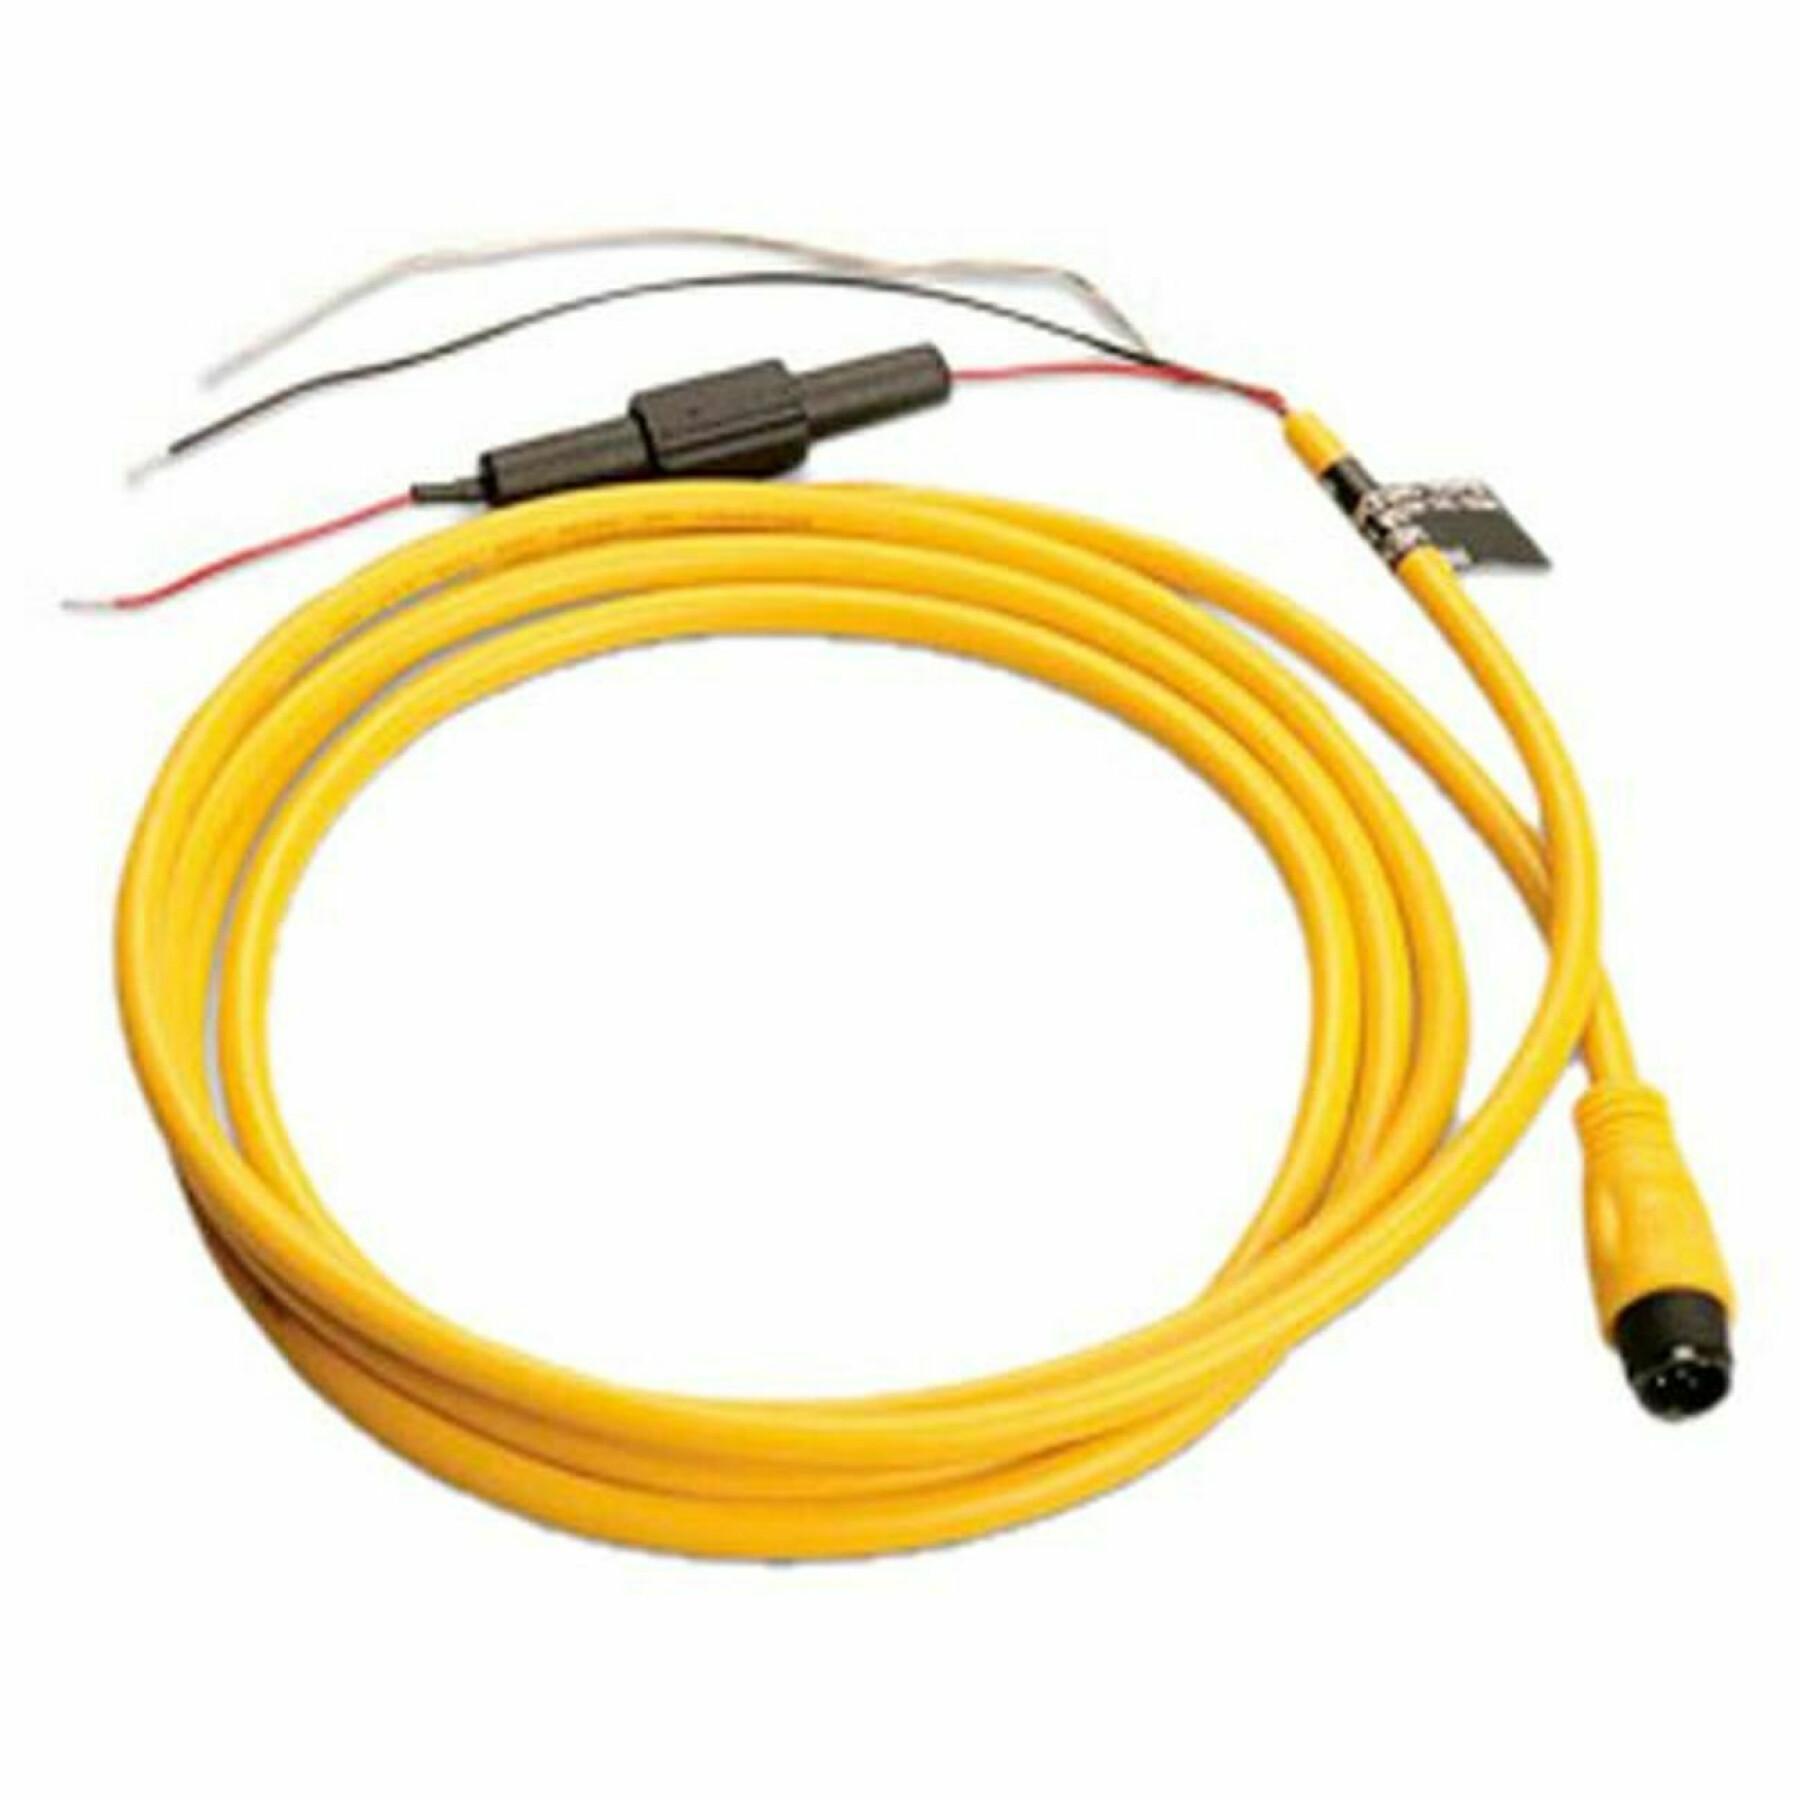 Cable de alimentación Garmin nmea 2000 2m